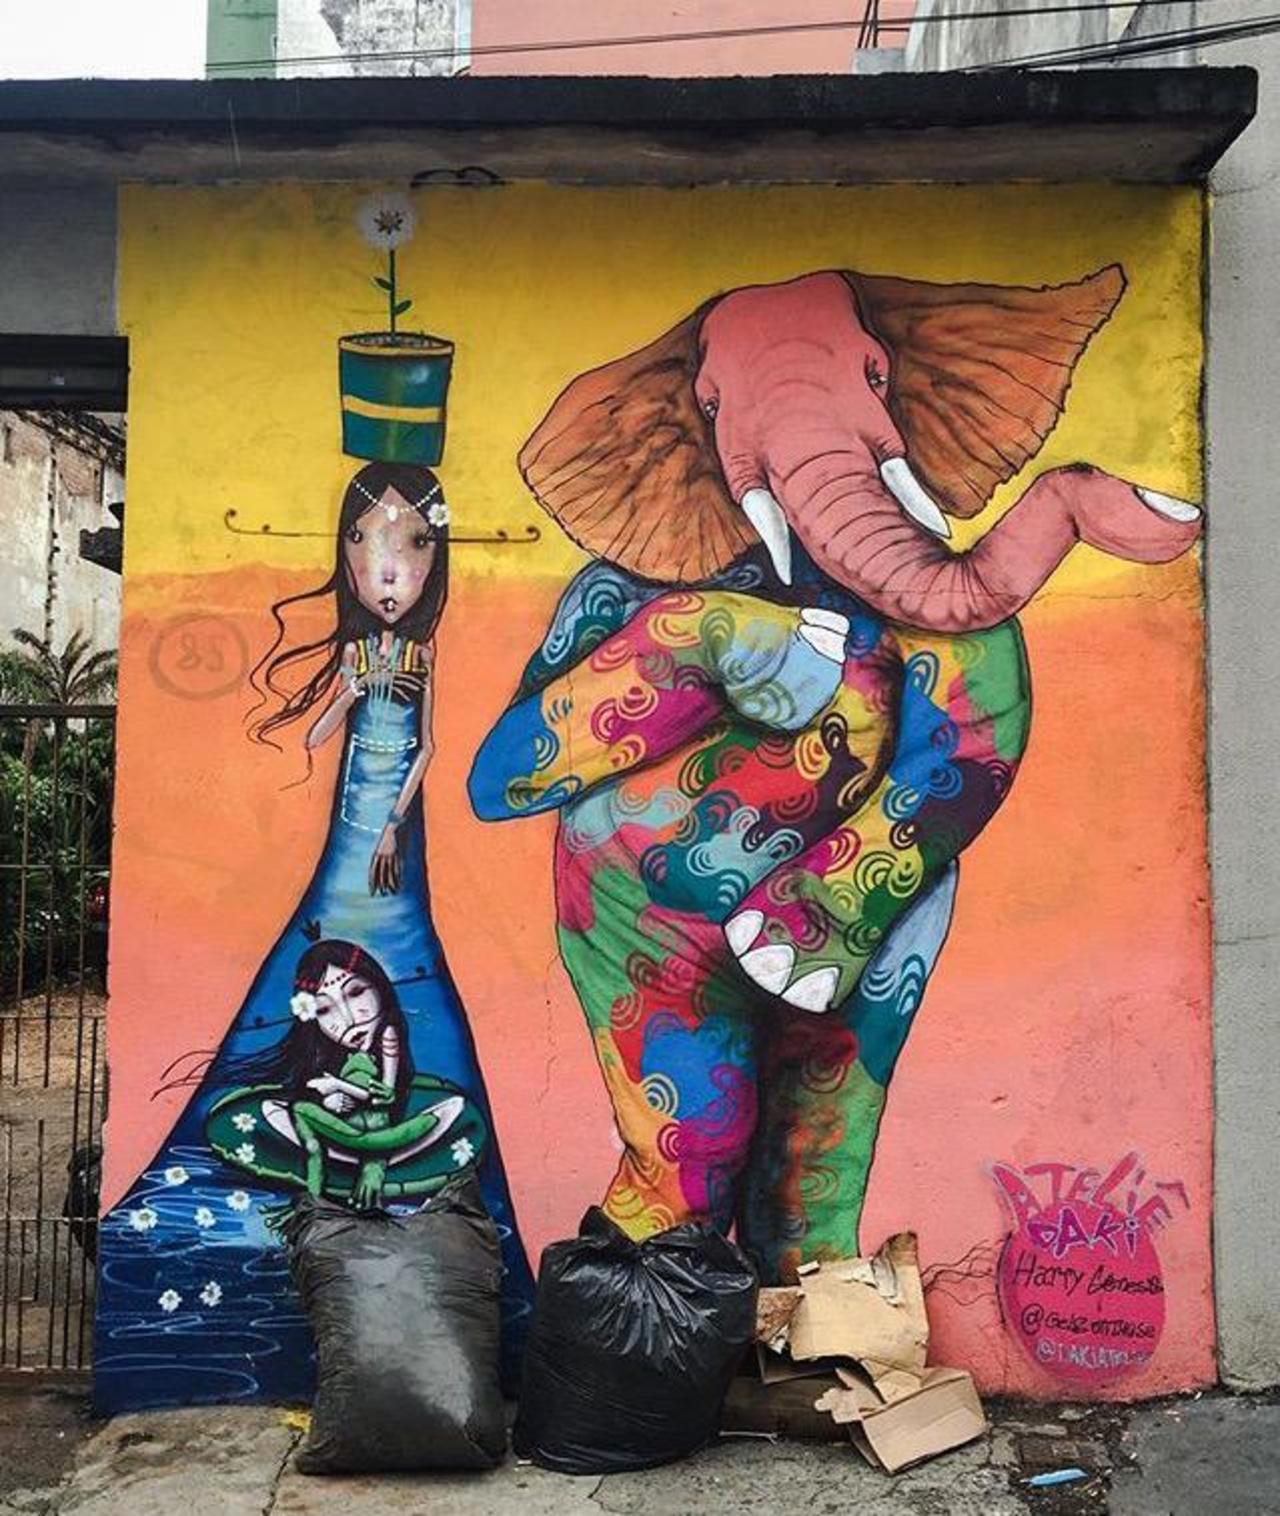 Street Art by Harry Geneis & Gelson in São Paulo 

#art #mural #graffiti #streetart http://t.co/fxpdAKy5Q0